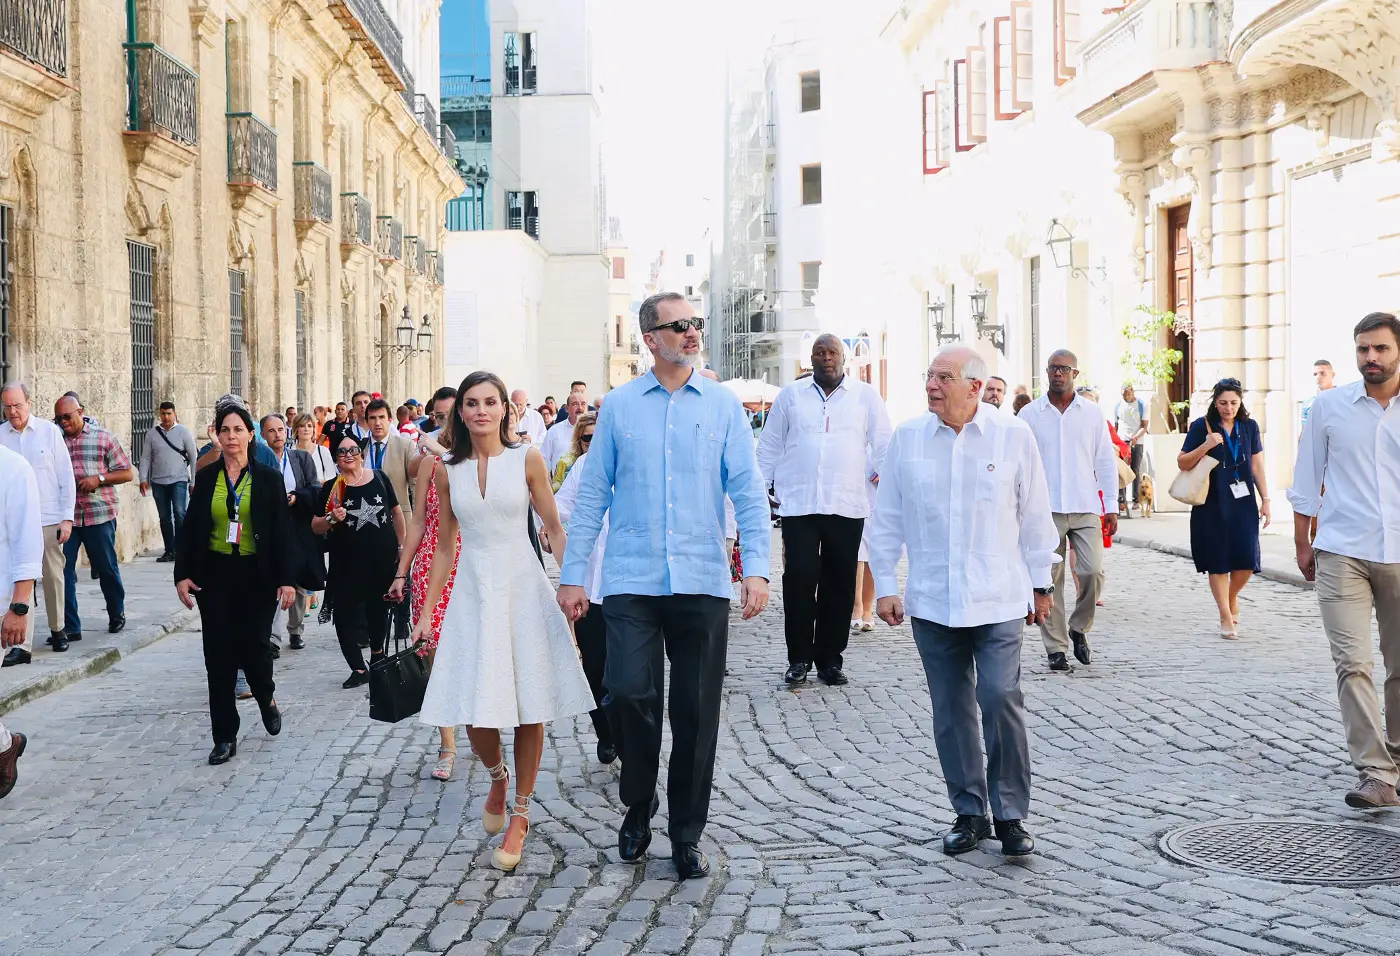 King Felipe and Queen Letizia toured the Havana City hand in hand